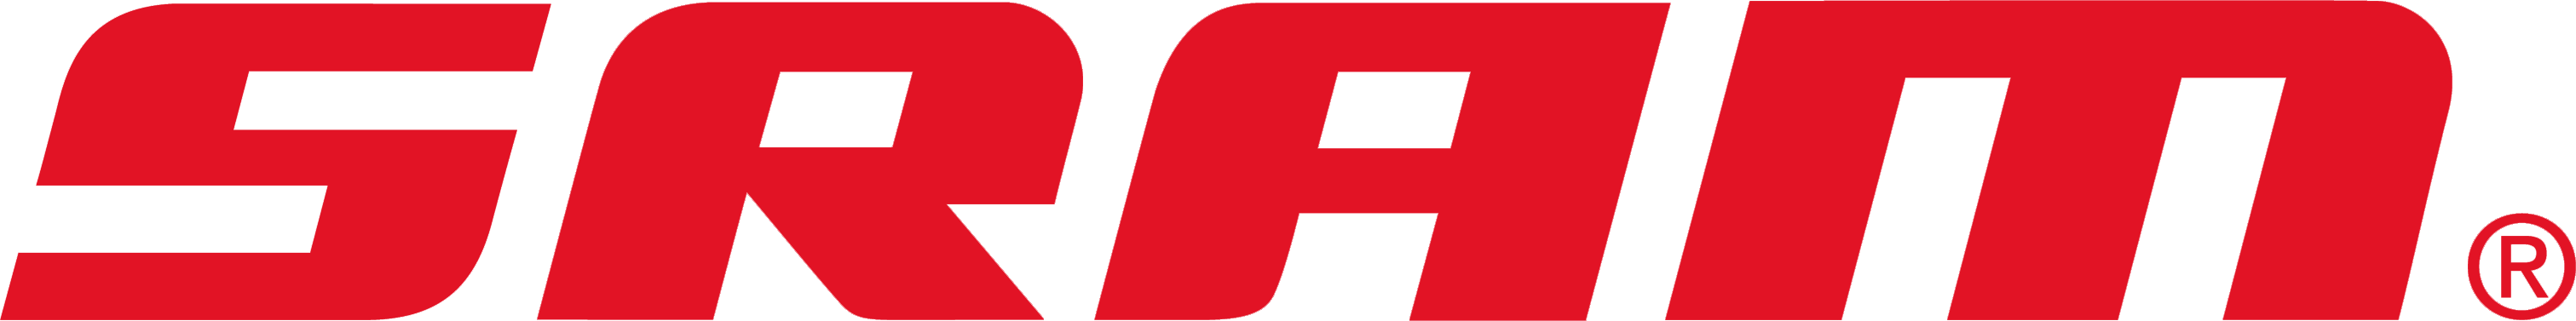 SRAM-Logo1